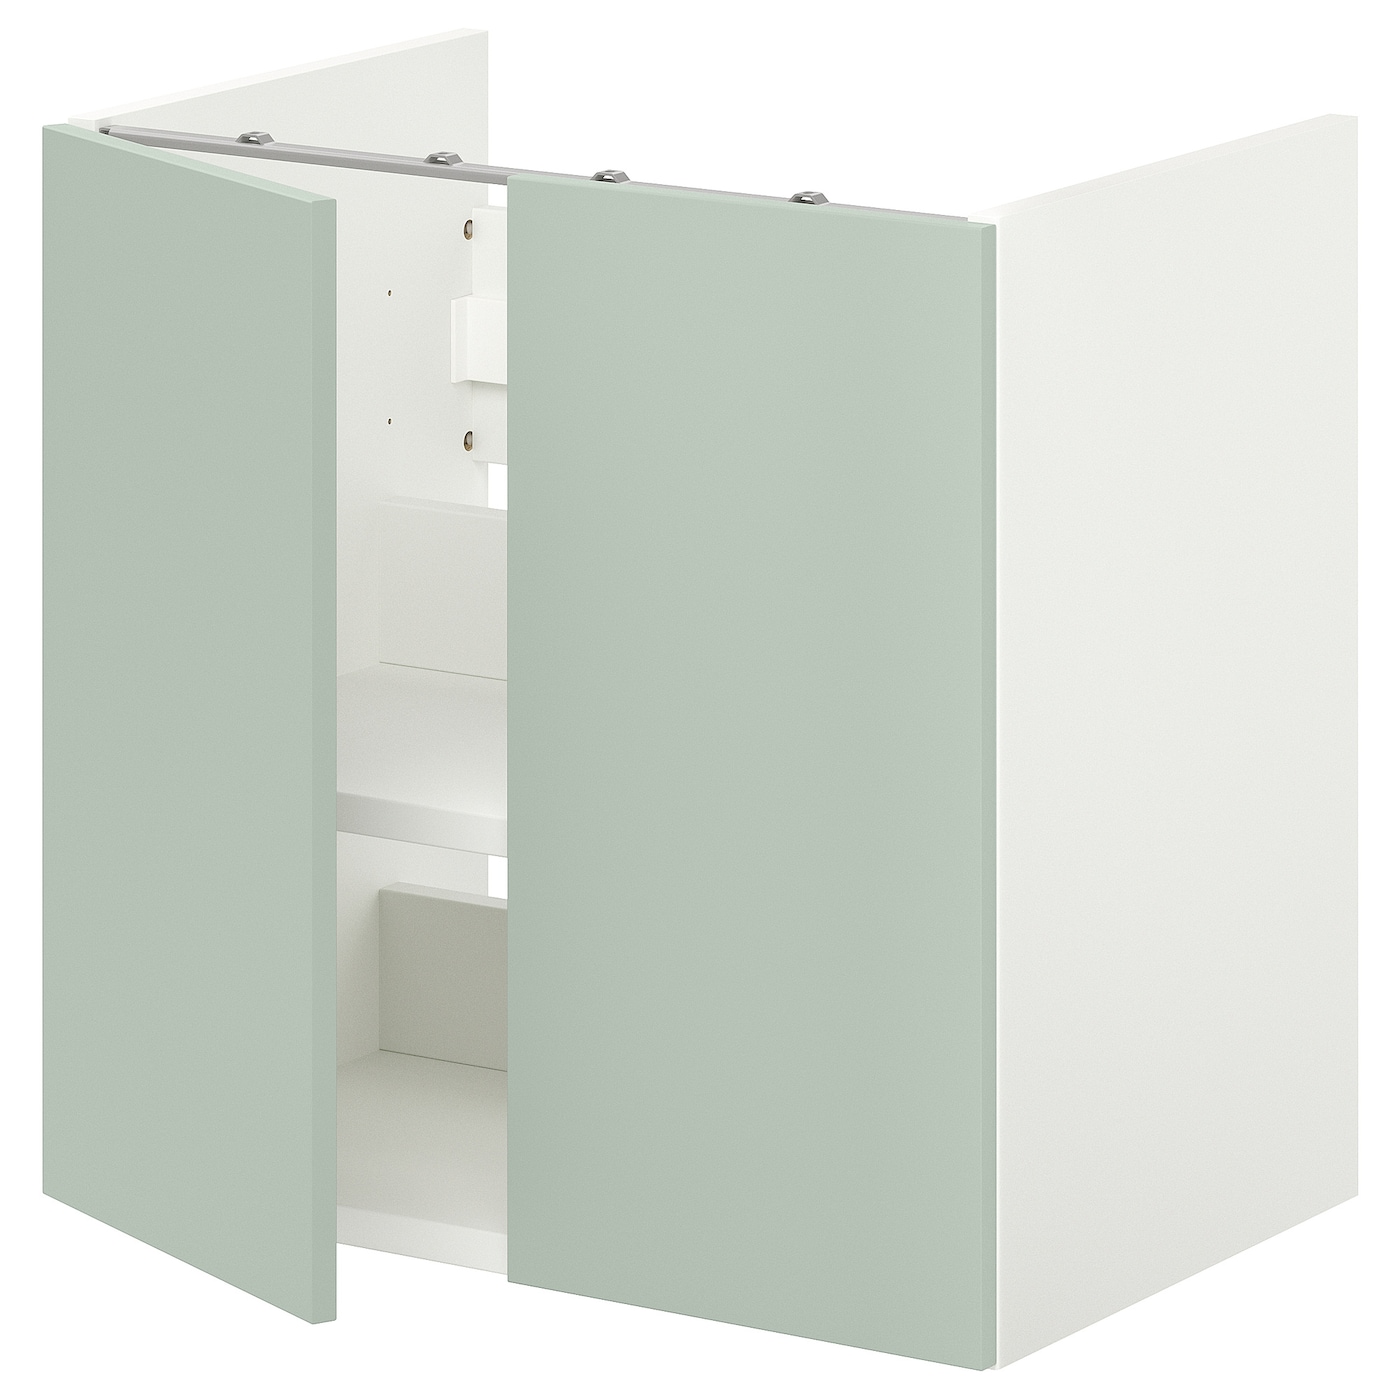 Умывальник с половинкой/дверью - ENHET IKEA/ЭНХЕТ ИКЕА, 60х60 см, белый/зеленый